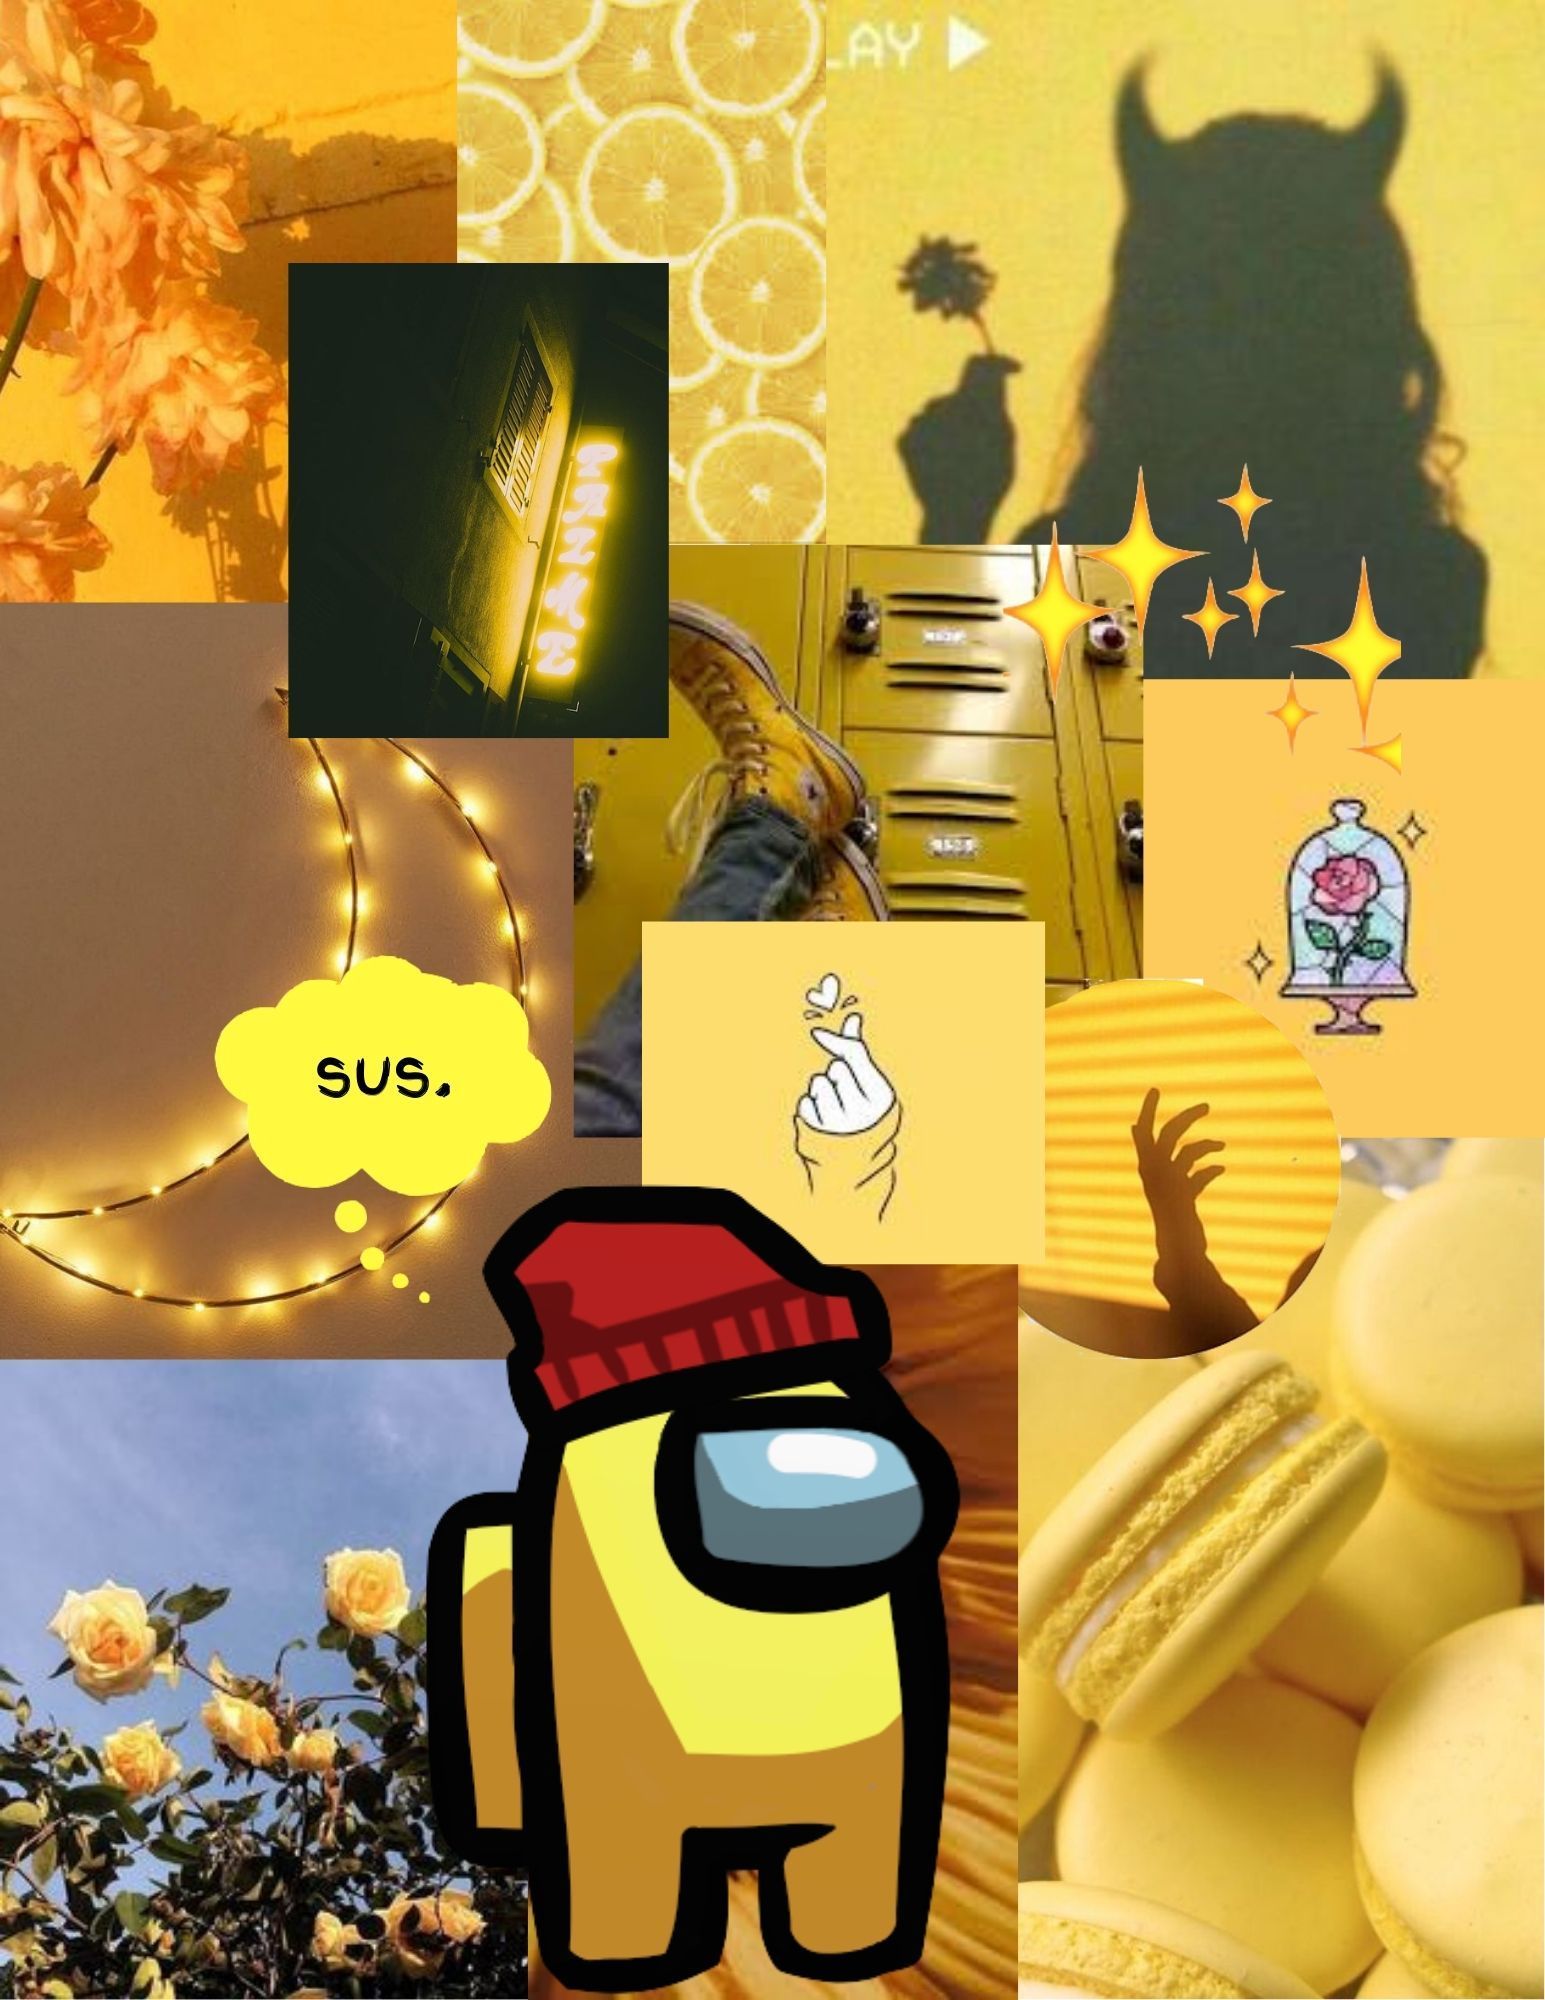 Yellow aesthetic wallpaper with Among Us characters - Among Us